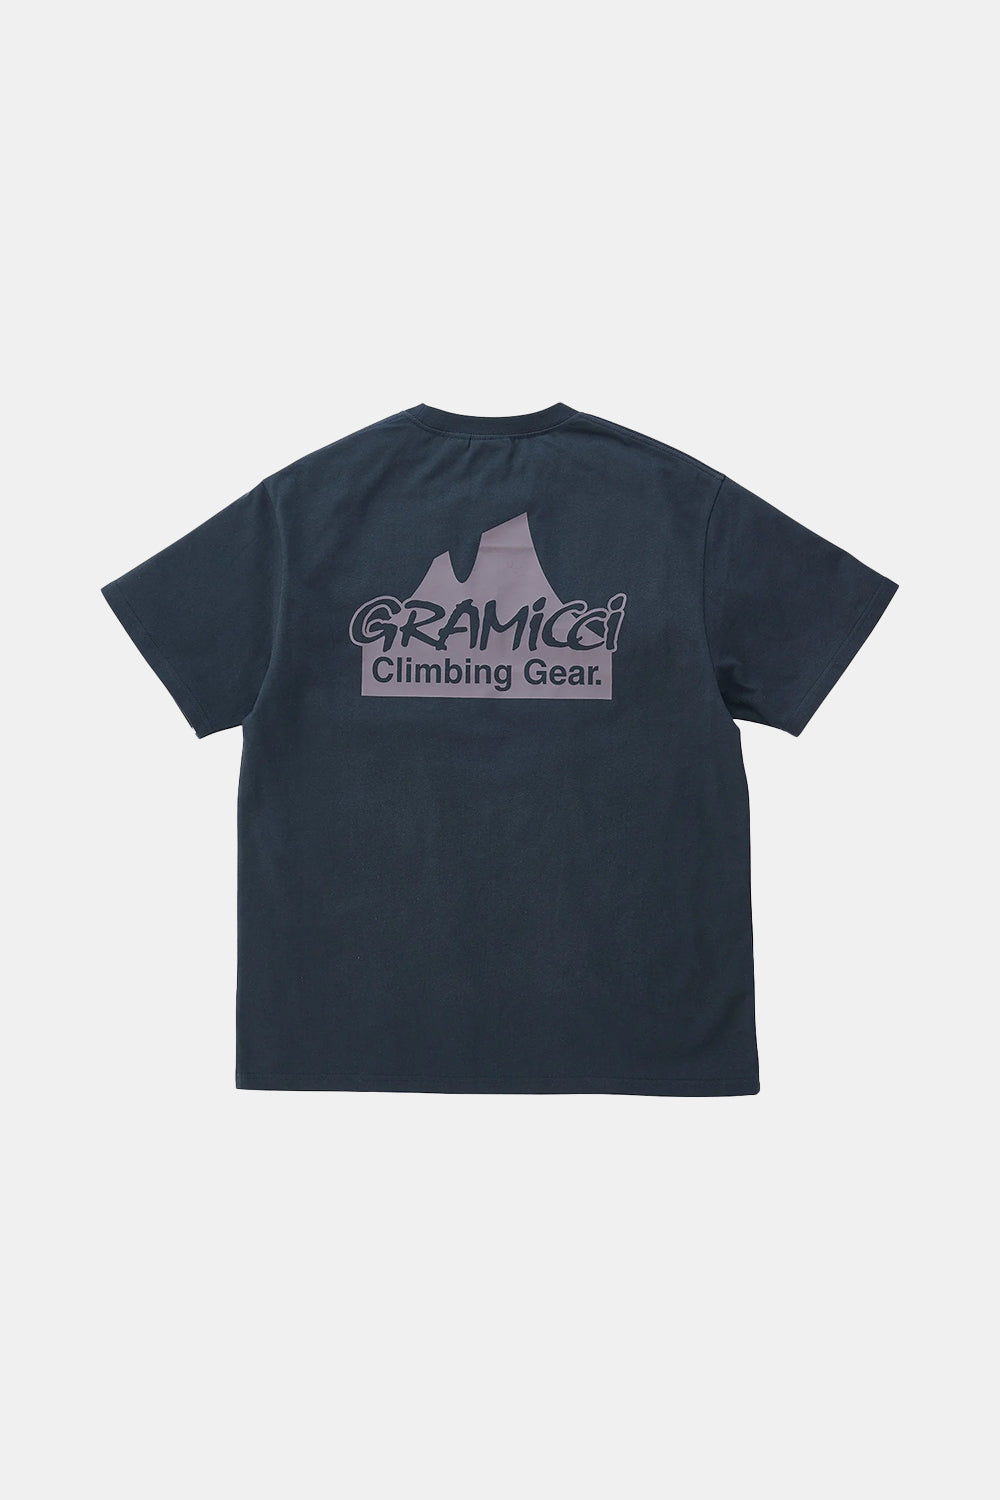 Gramicci T-shirt med klatreudstyr (vintage sort)